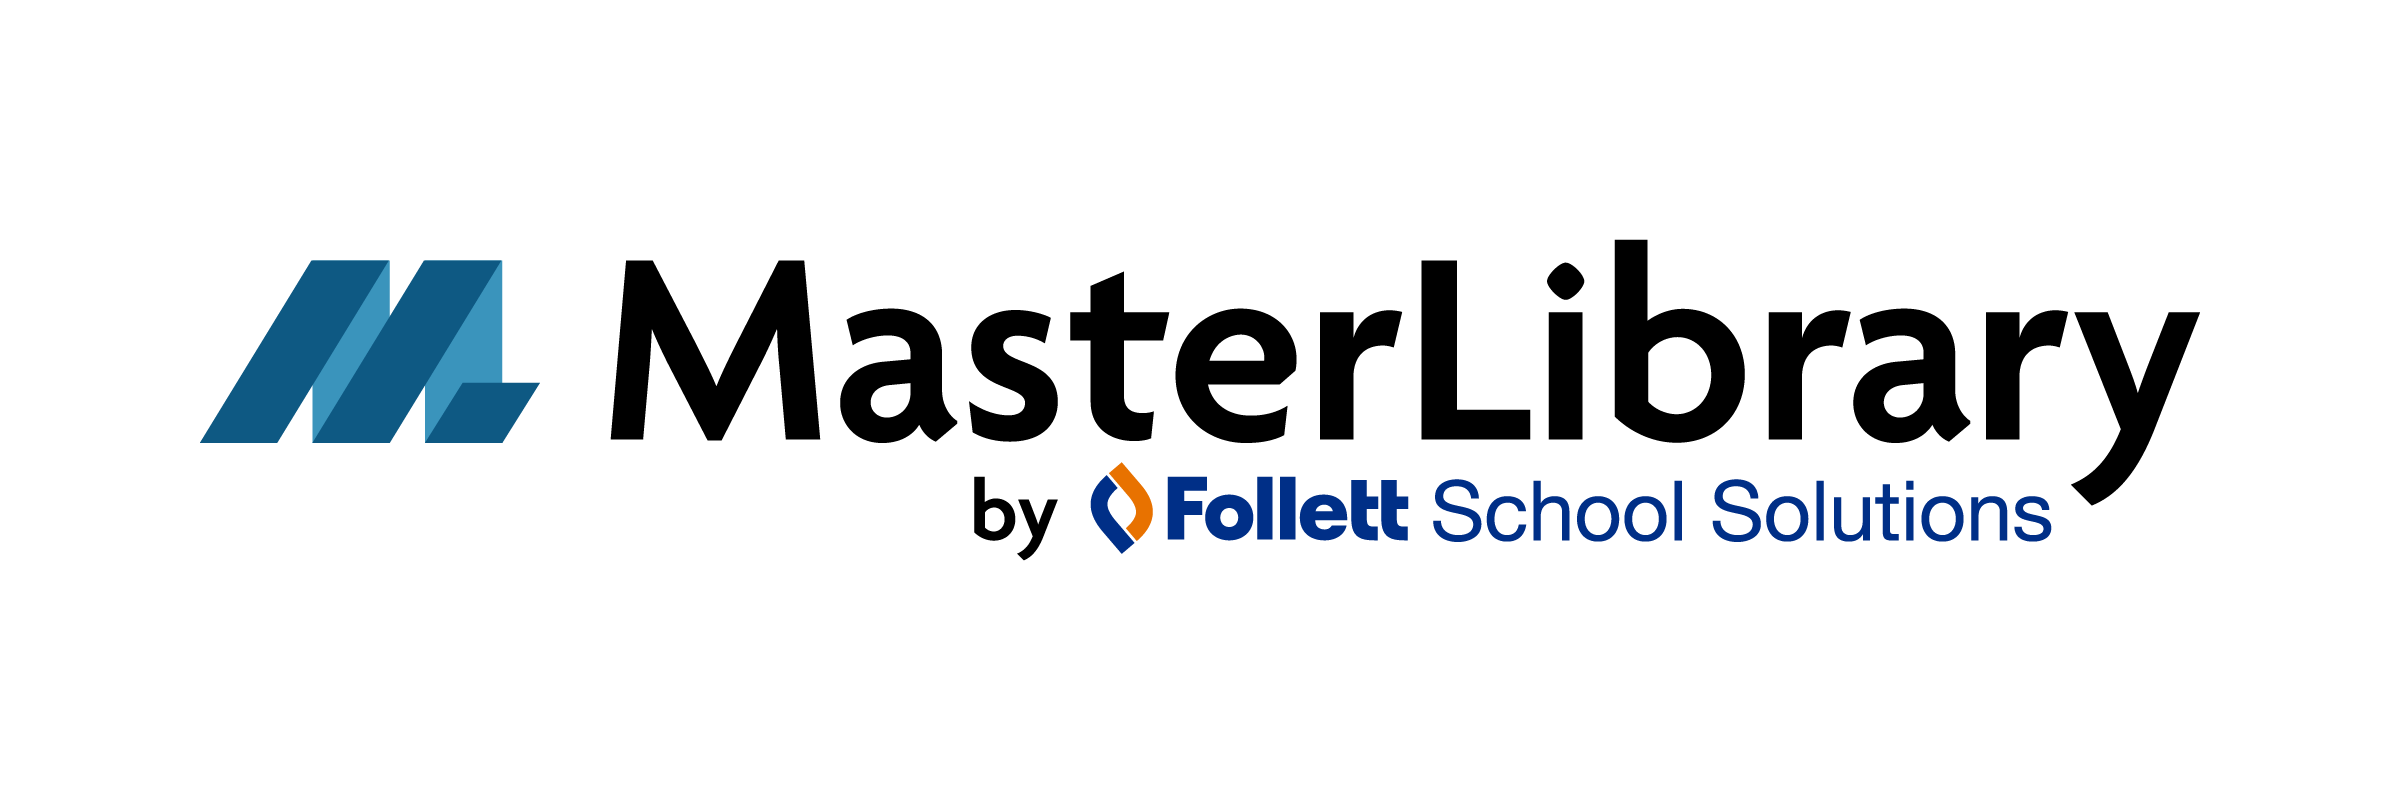 MasterLibrary by Follett School Solutions logo